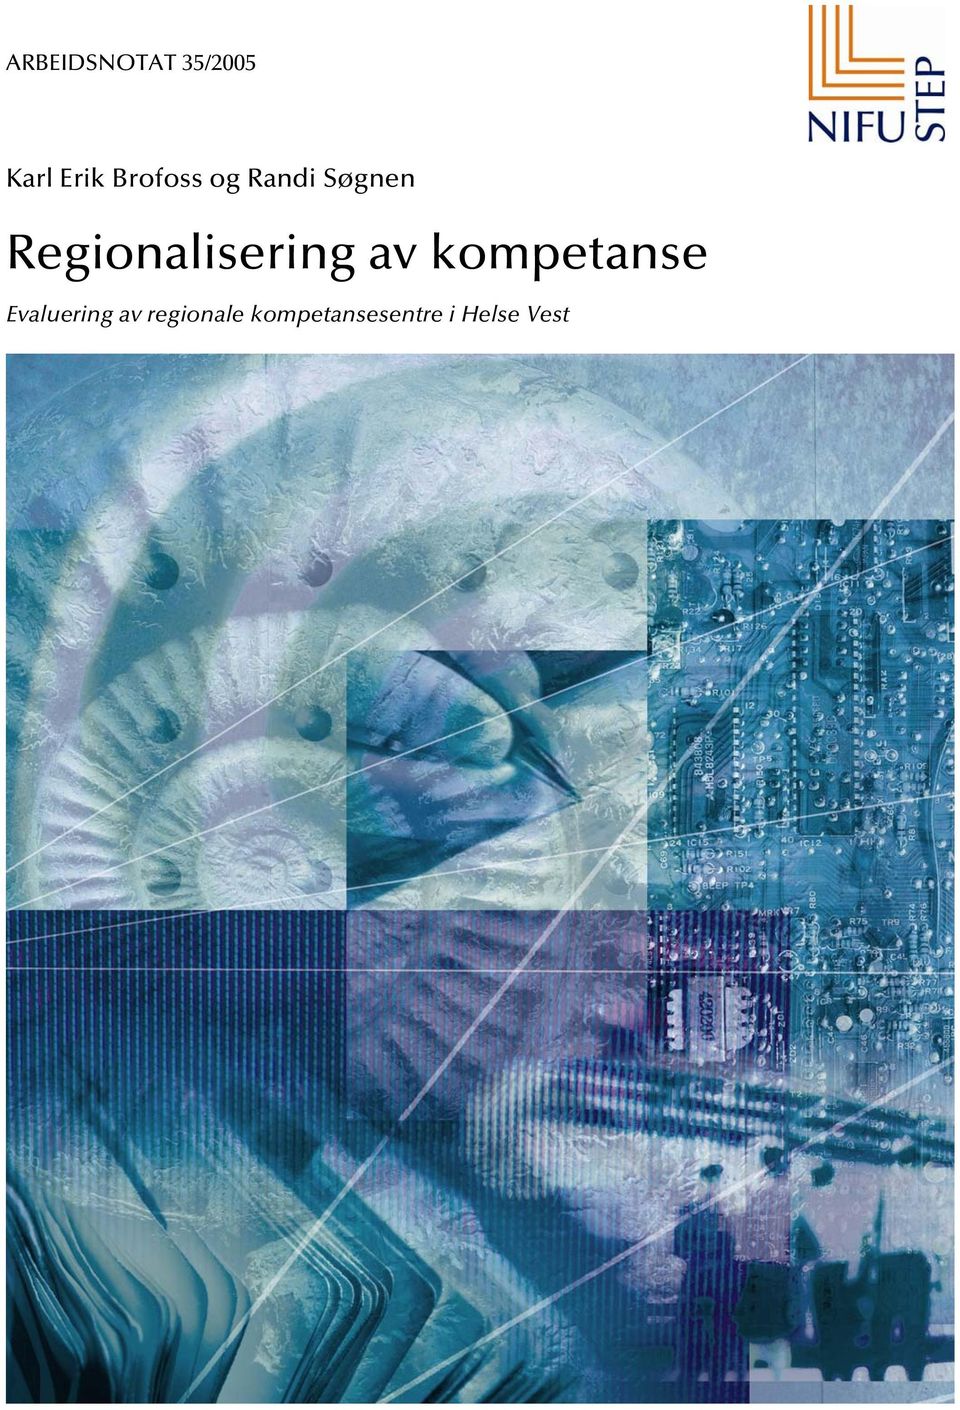 Regionalisering av kompetanse